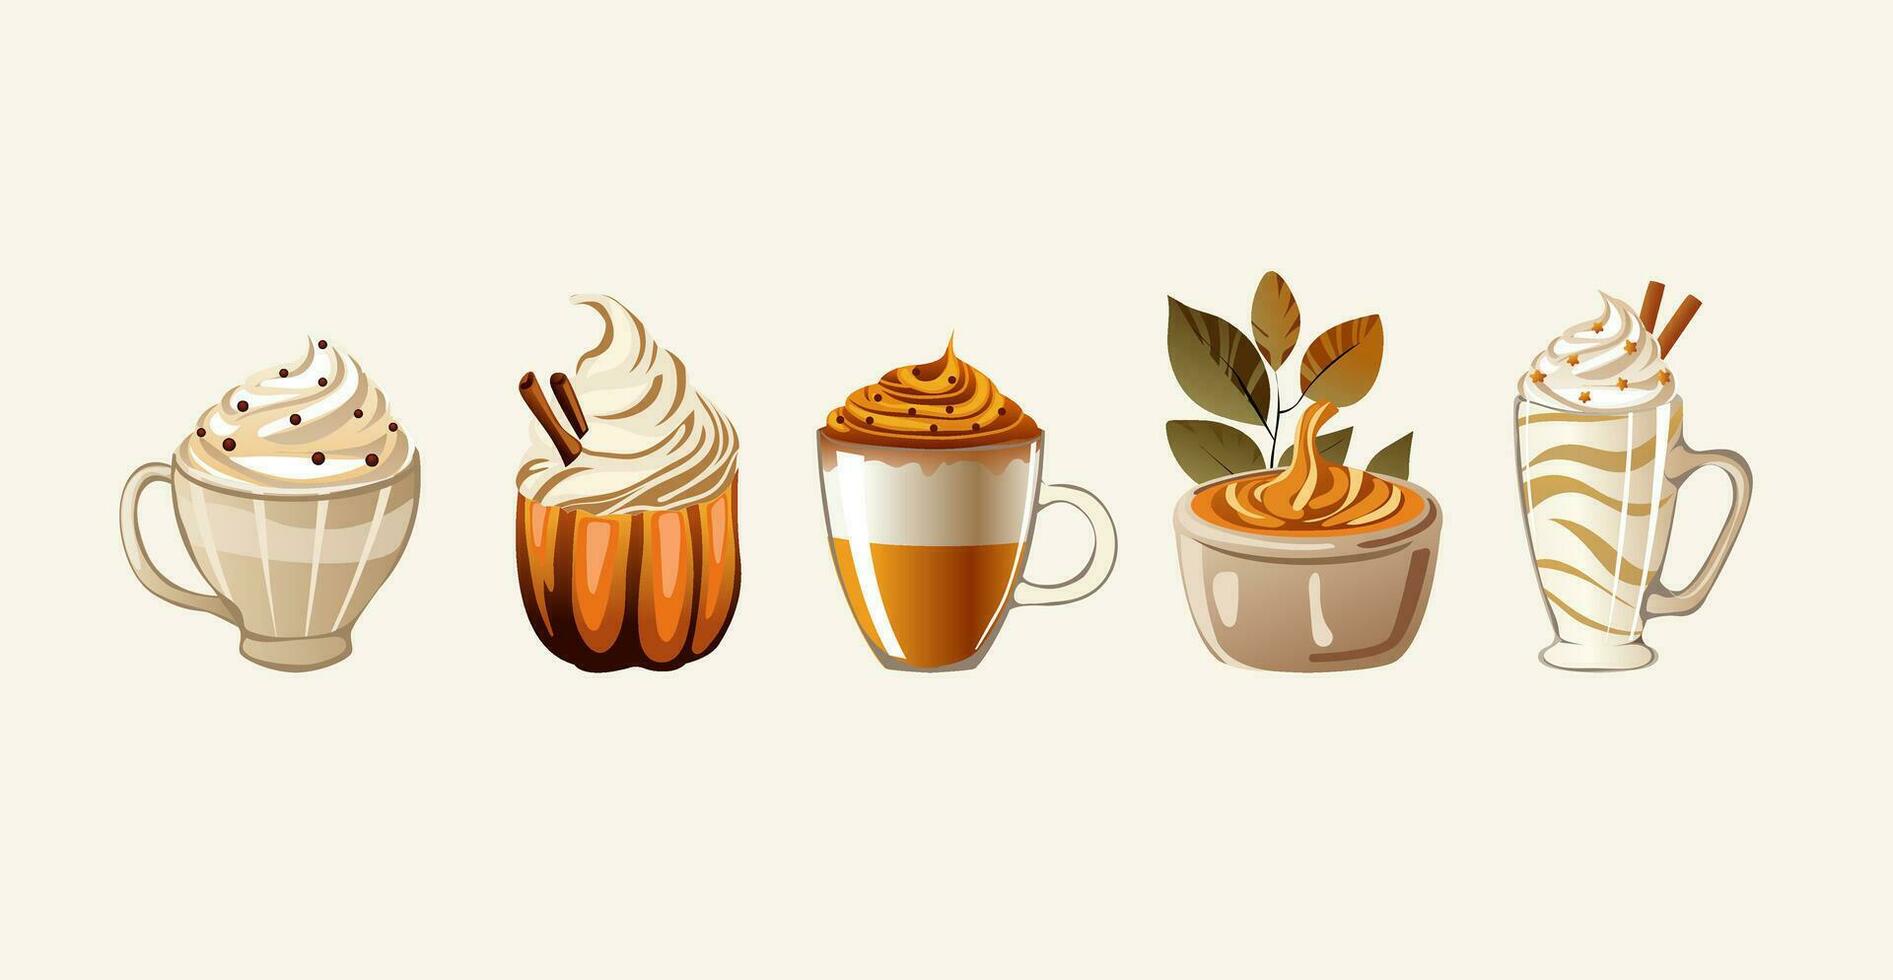 uma conjunto do outono bebidas e sobremesas. pode estar usava para publicidade tema de outono cafés ou restaurantes, criando promocional materiais para sazonal menus. vetor ilustração.